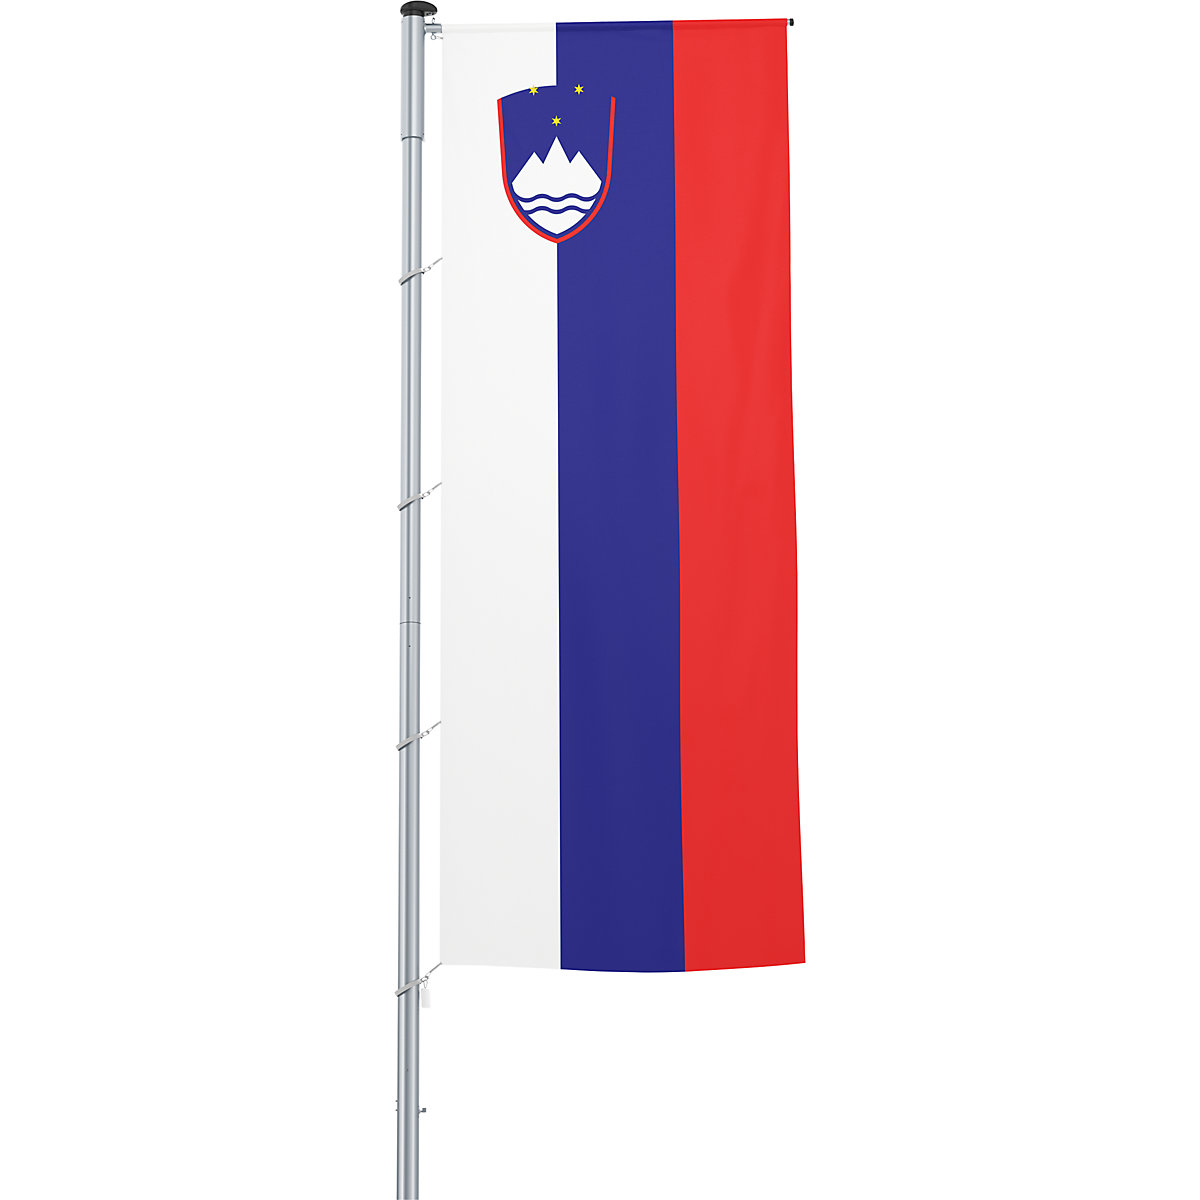 Vlajka na pozdĺžne upevnenie na stožiar/národná vlajka – Mannus, formát 1,2 x 3 m, Slovinsko-29